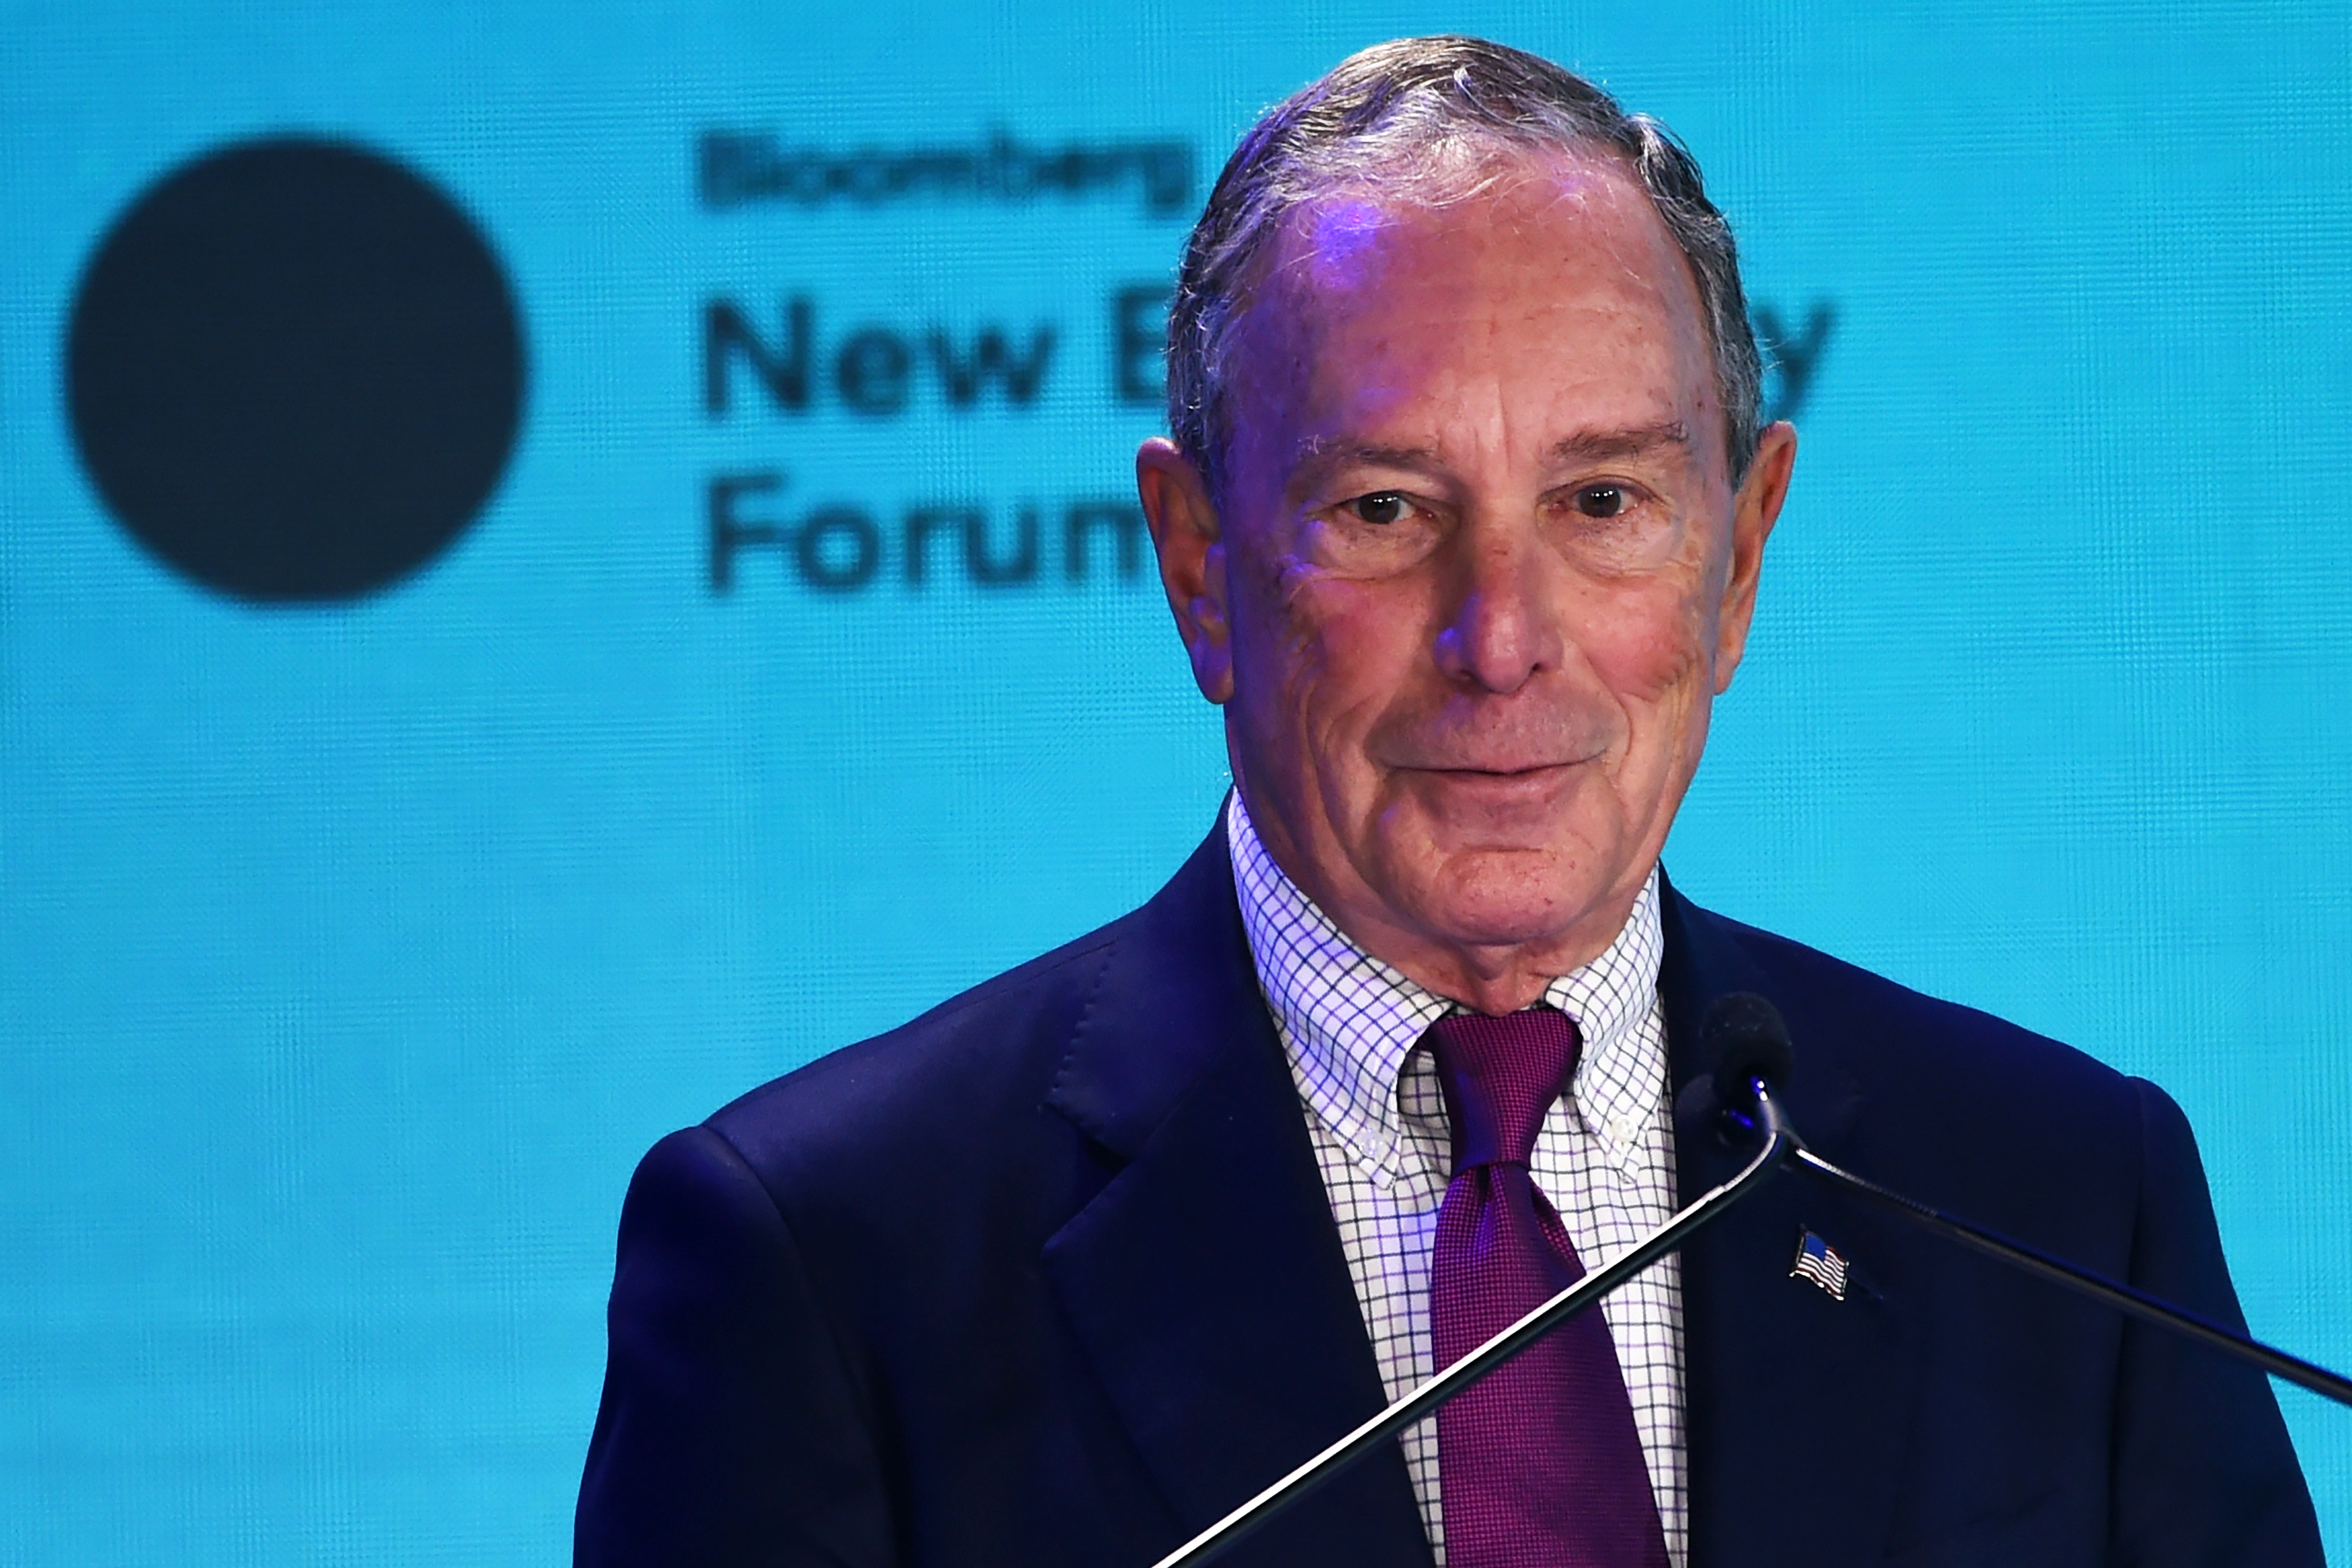 1,8 milliárd dollárt adományozott egykori egyetemének Michael Bloomberg